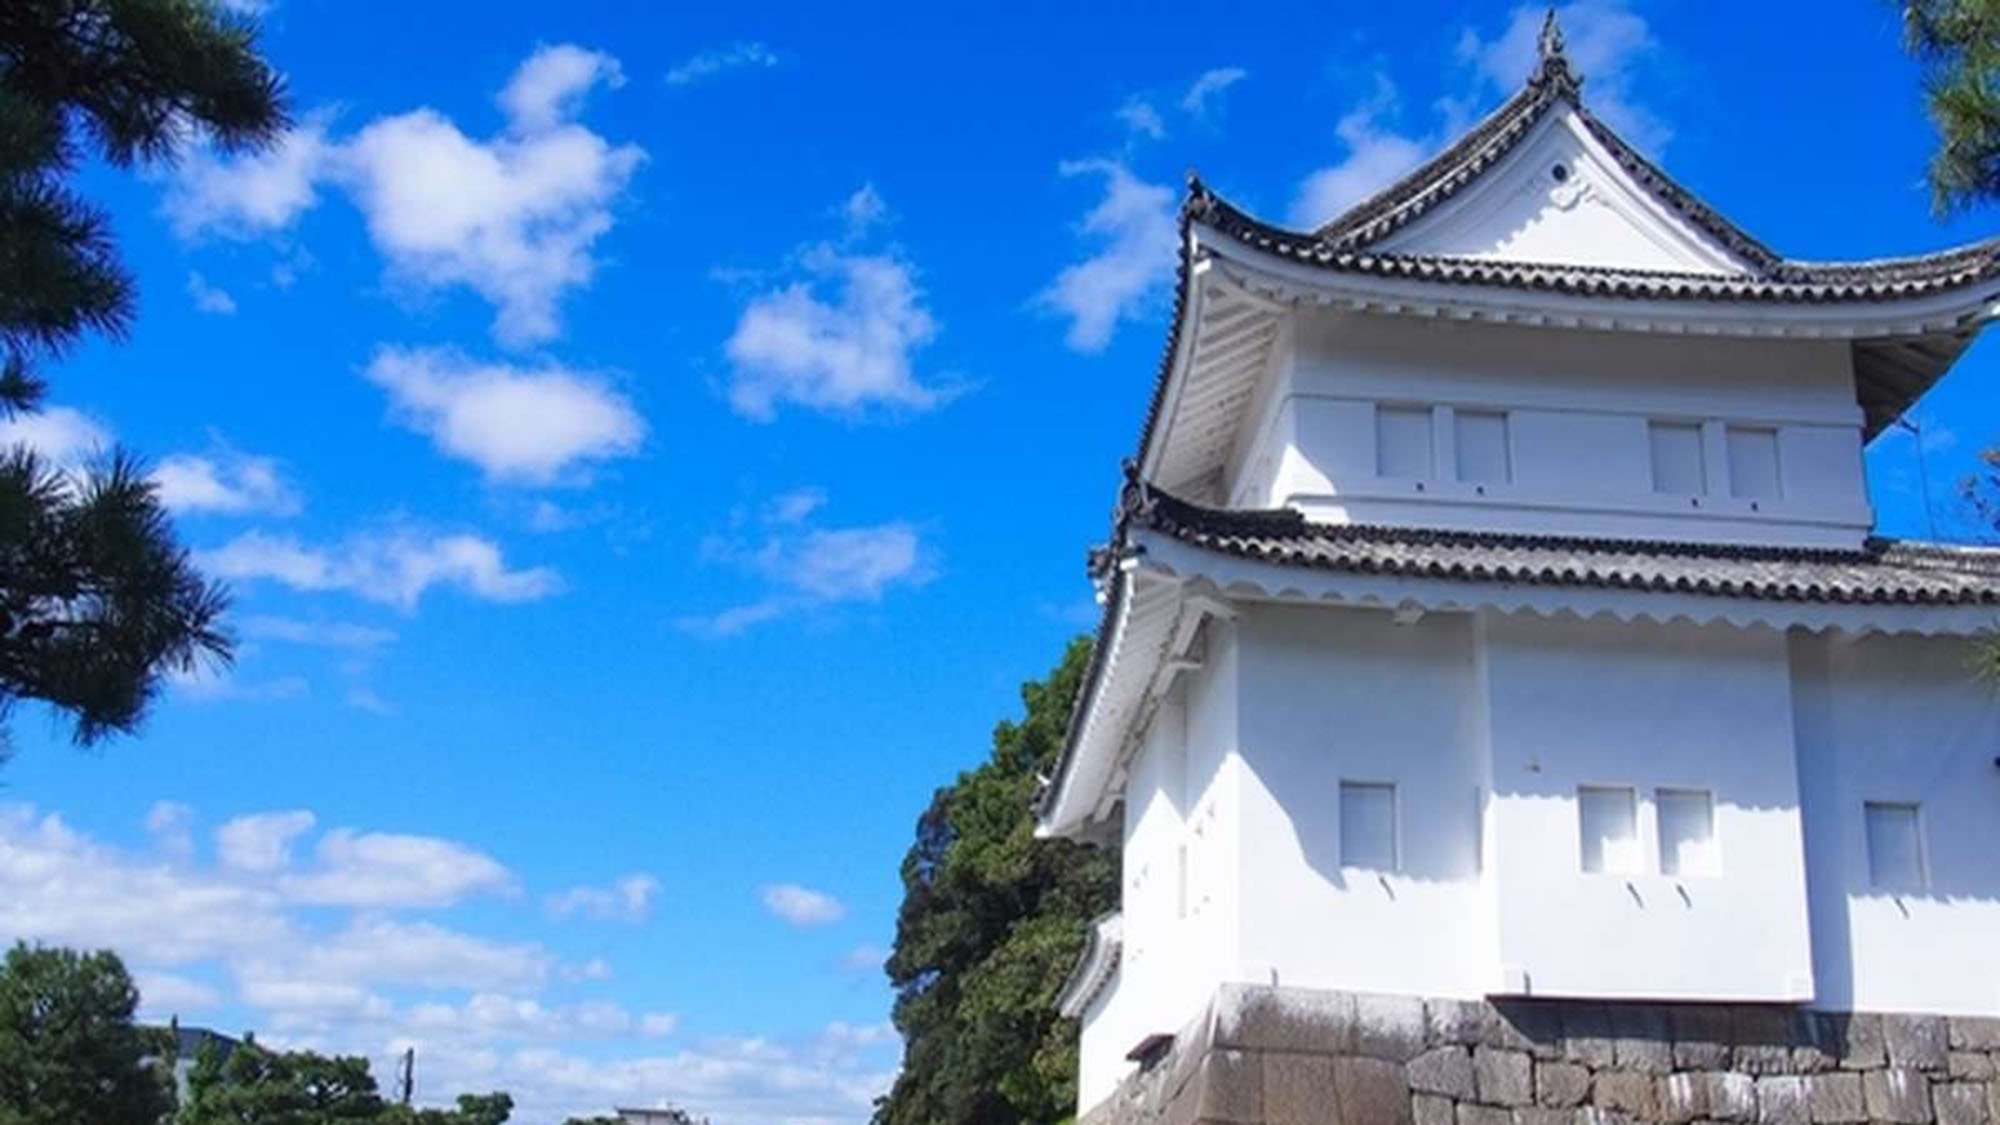 【二条城】元離宮二条城は徳川家の栄枯盛衰をはじめ、日本の歴史の移り変わりを見守ってきたお城です。